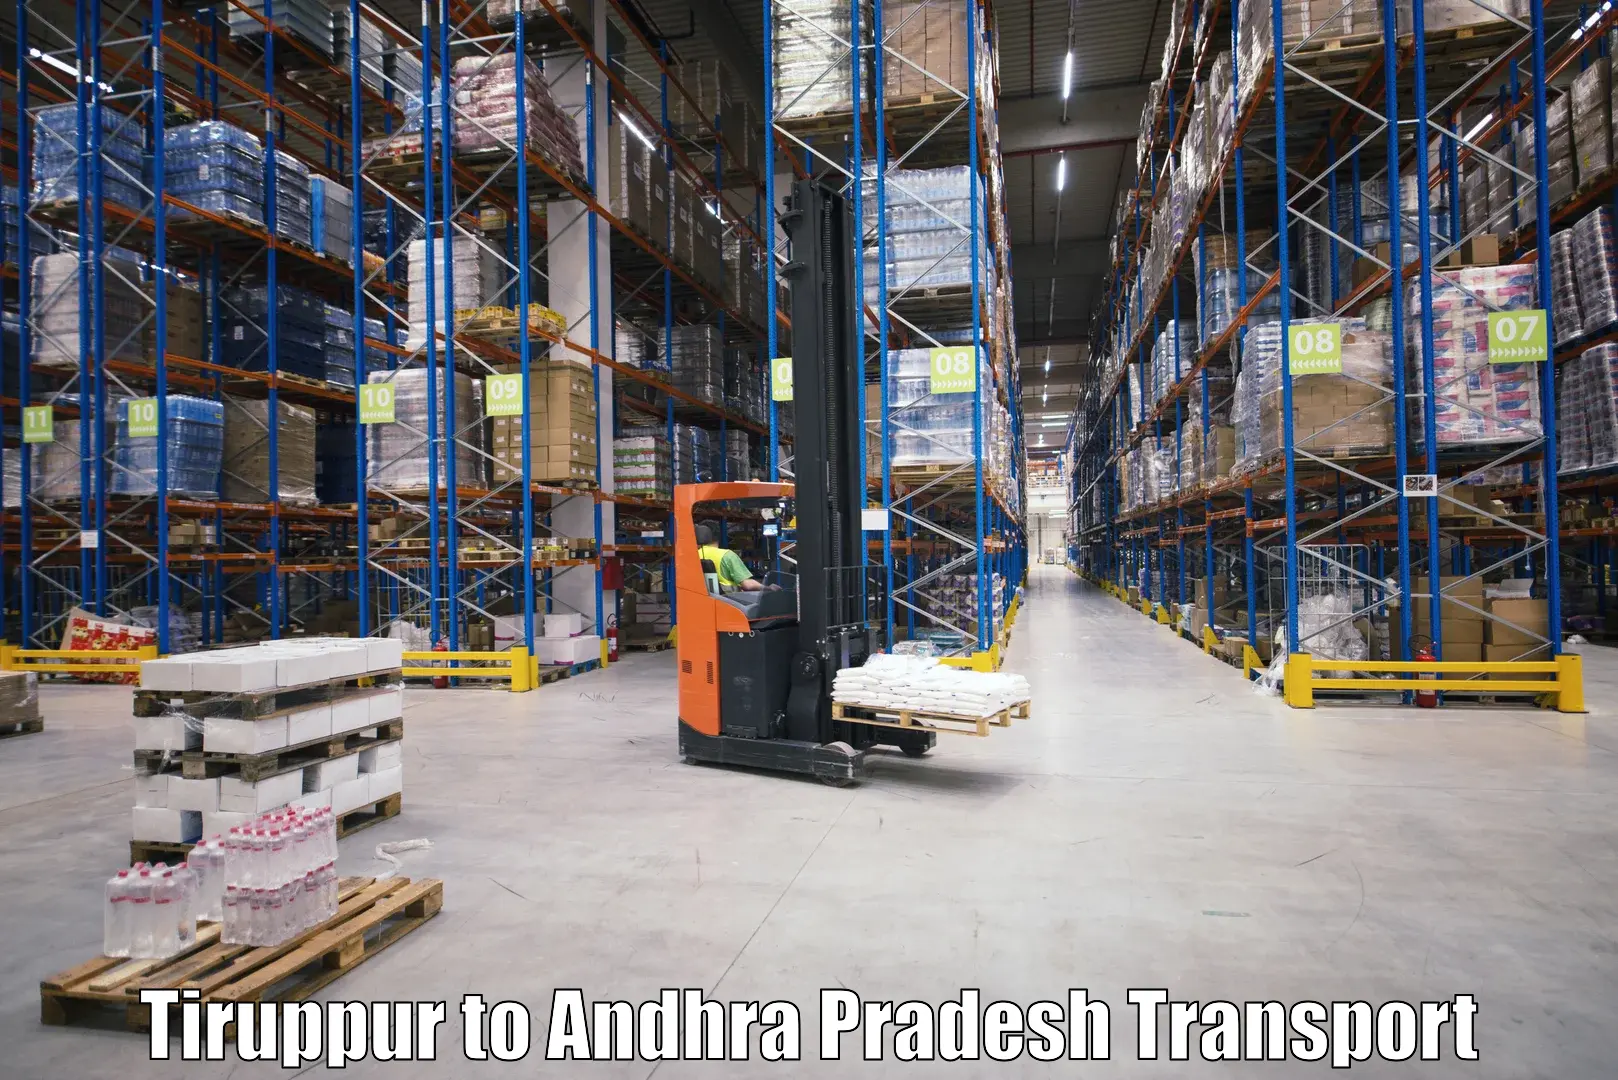 Online transport booking Tiruppur to Andhra Pradesh